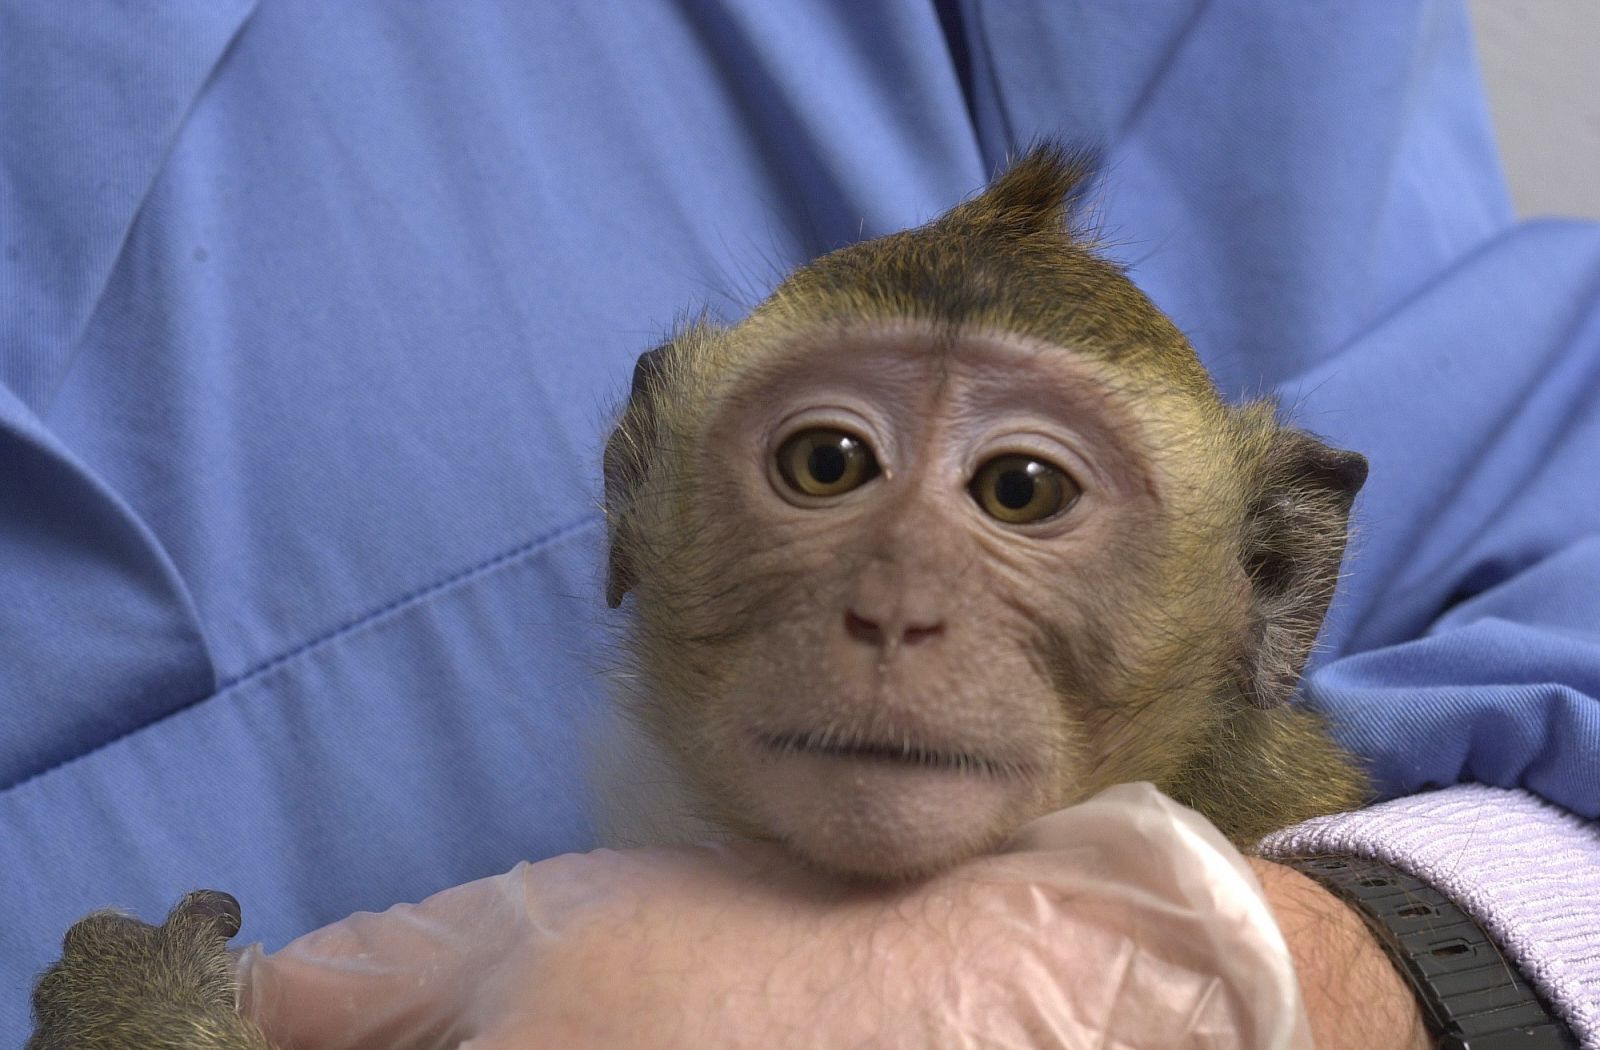 Baby rhesus macaque